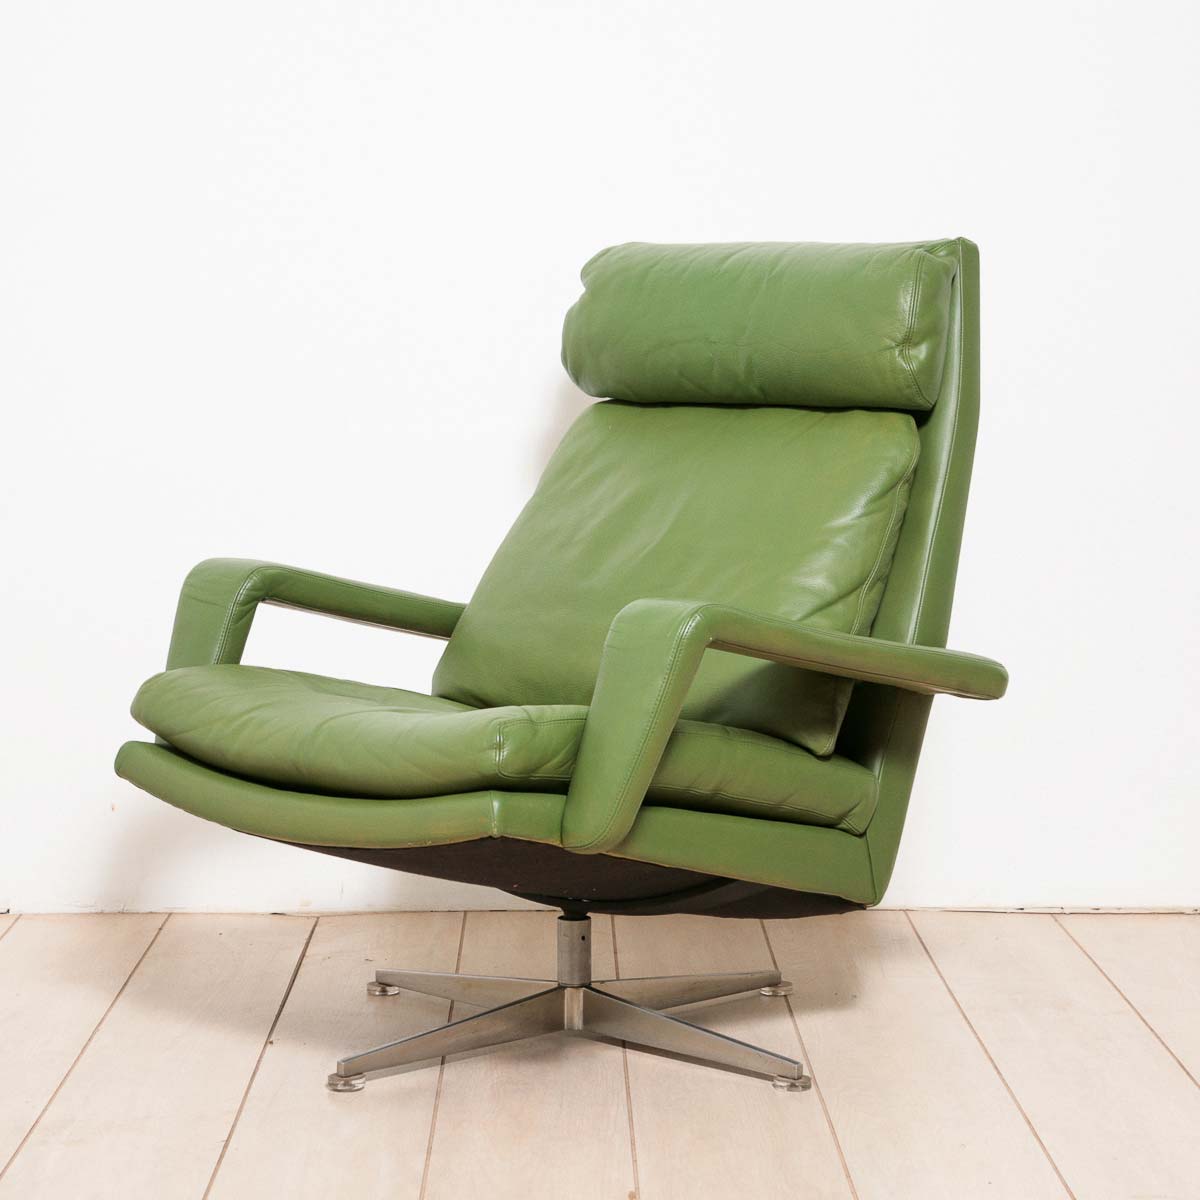 vandermost modern furniture green chair